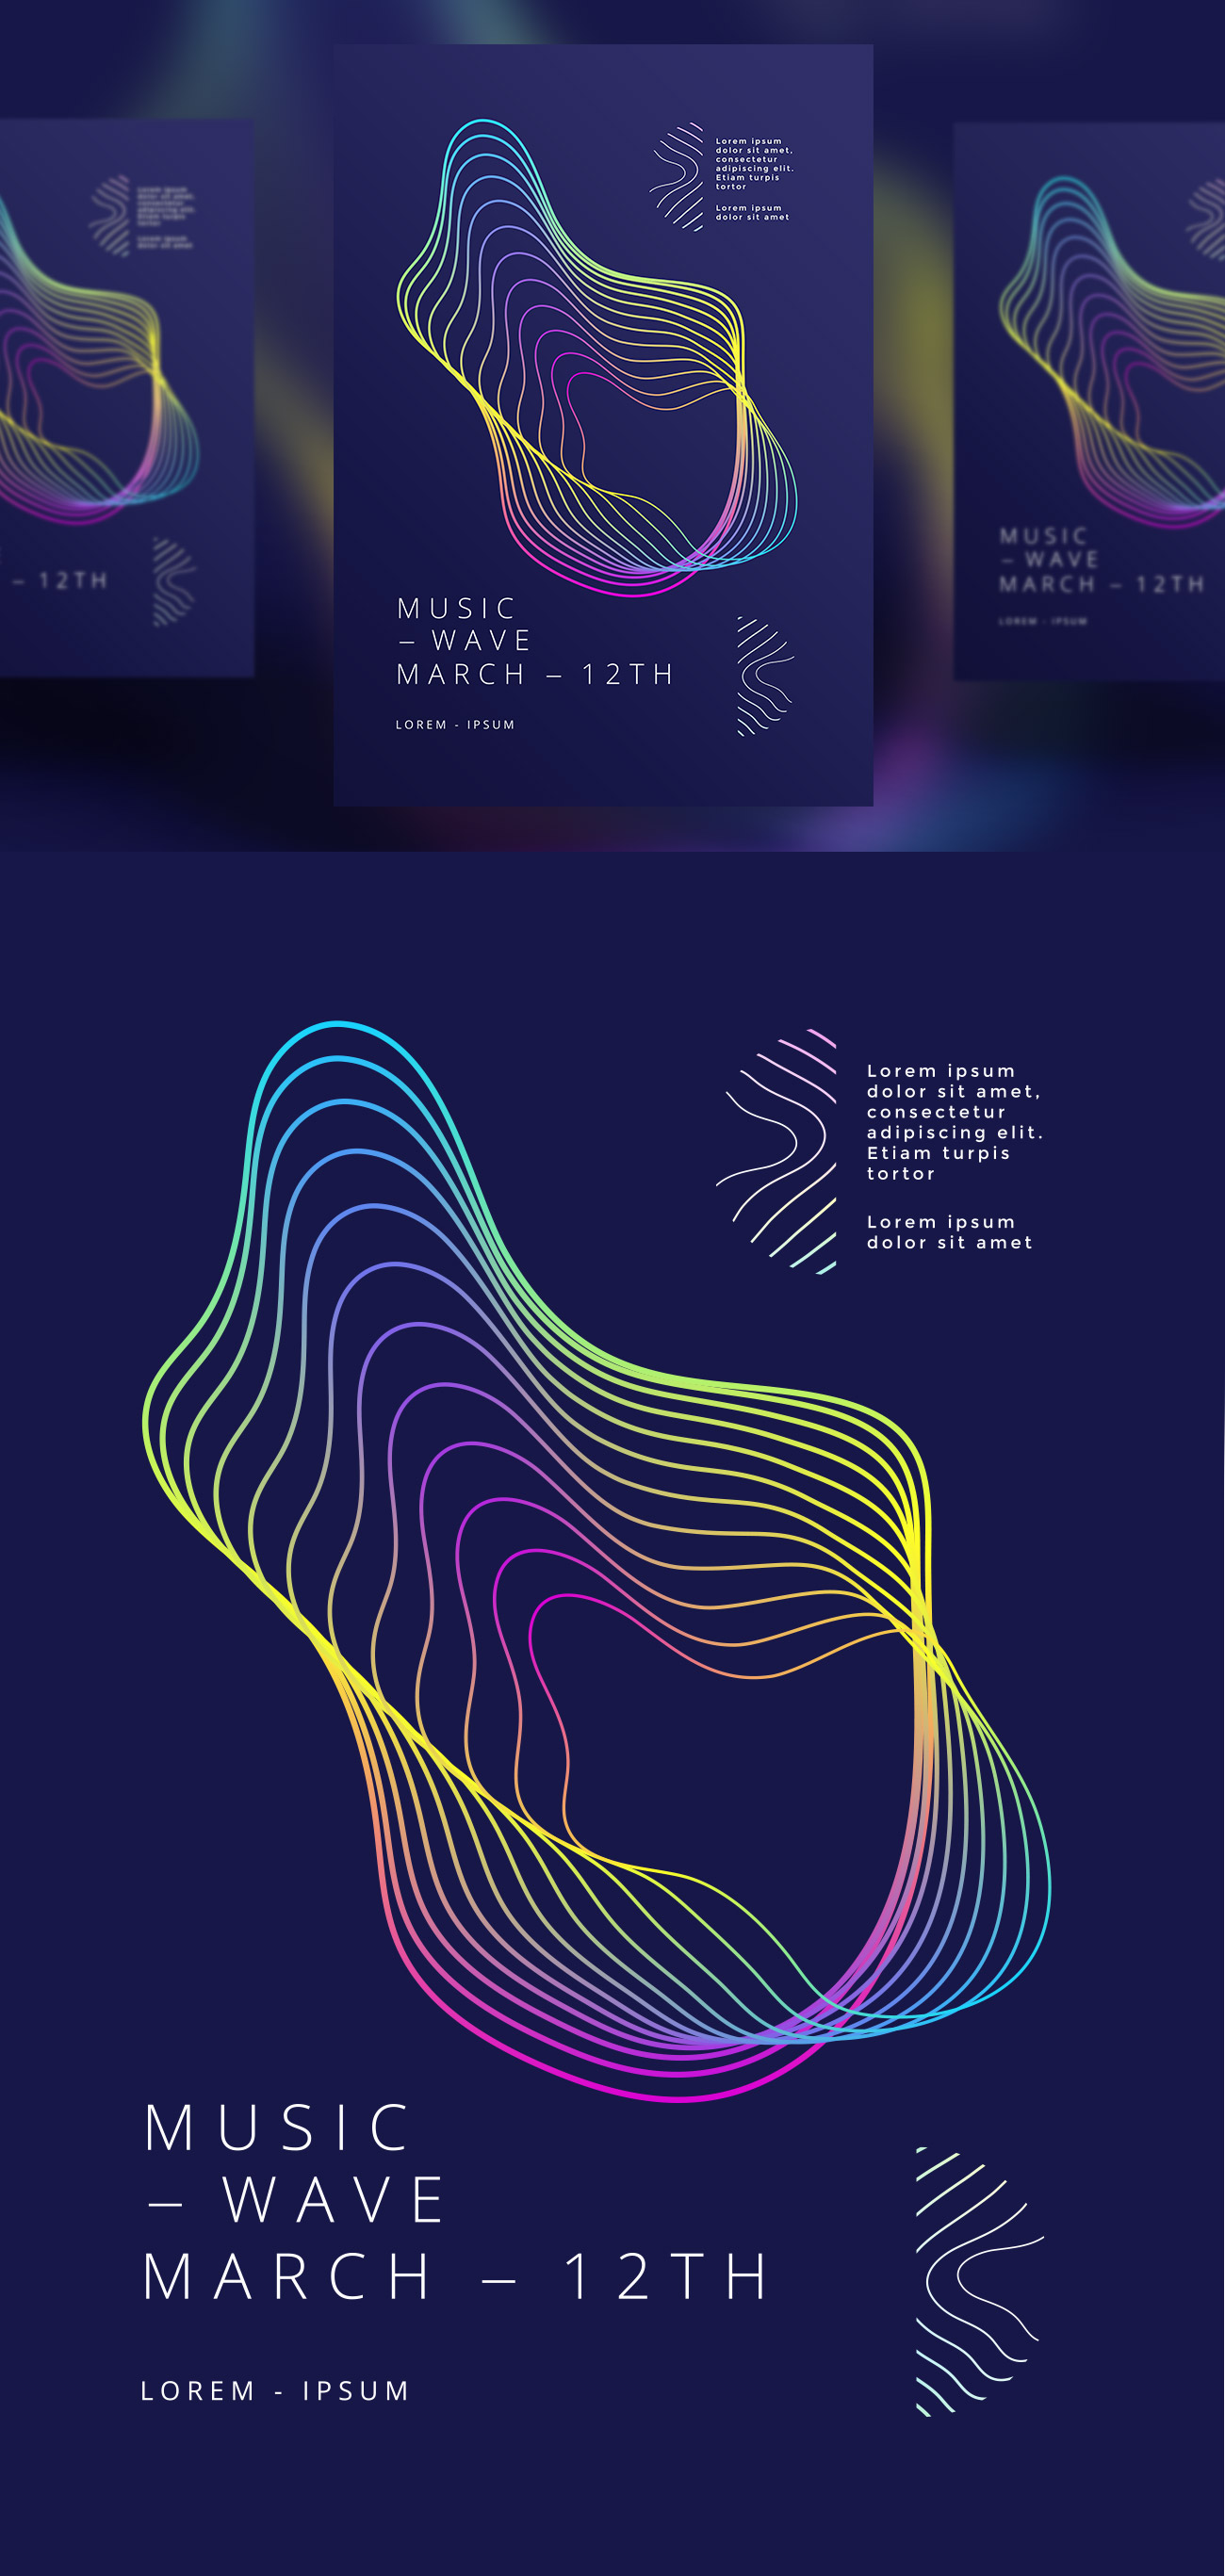 抽象渐变线波音乐波浪海报设计矢量素材 #1019318464